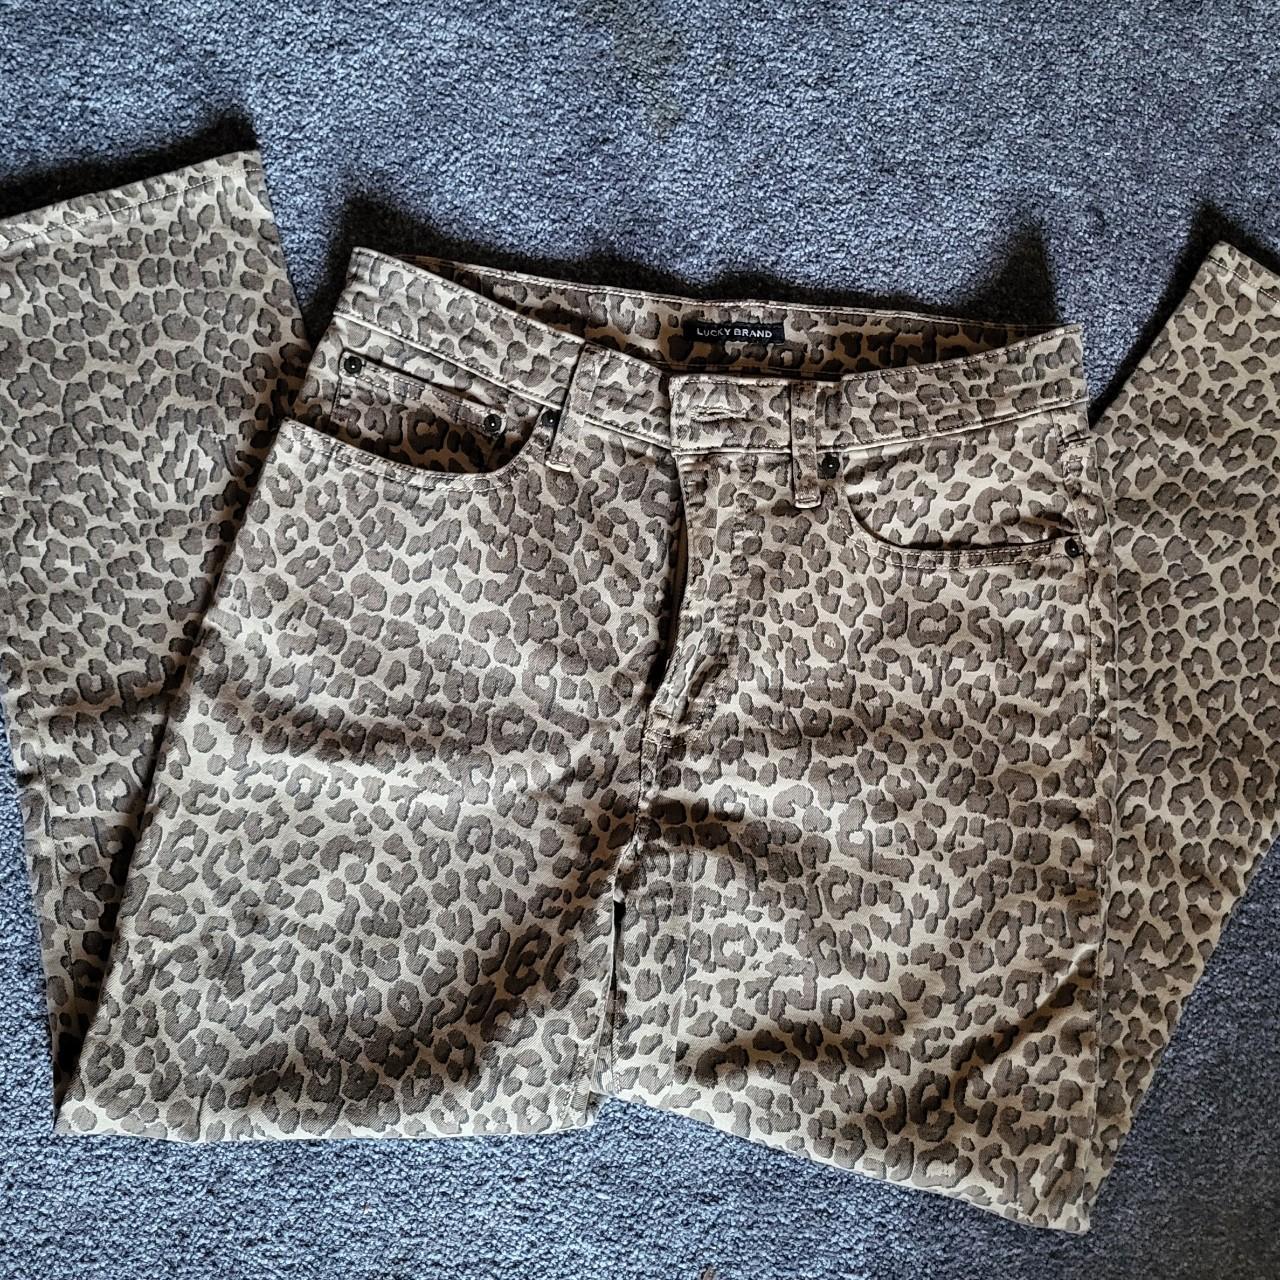 Leopard jeans - Depop